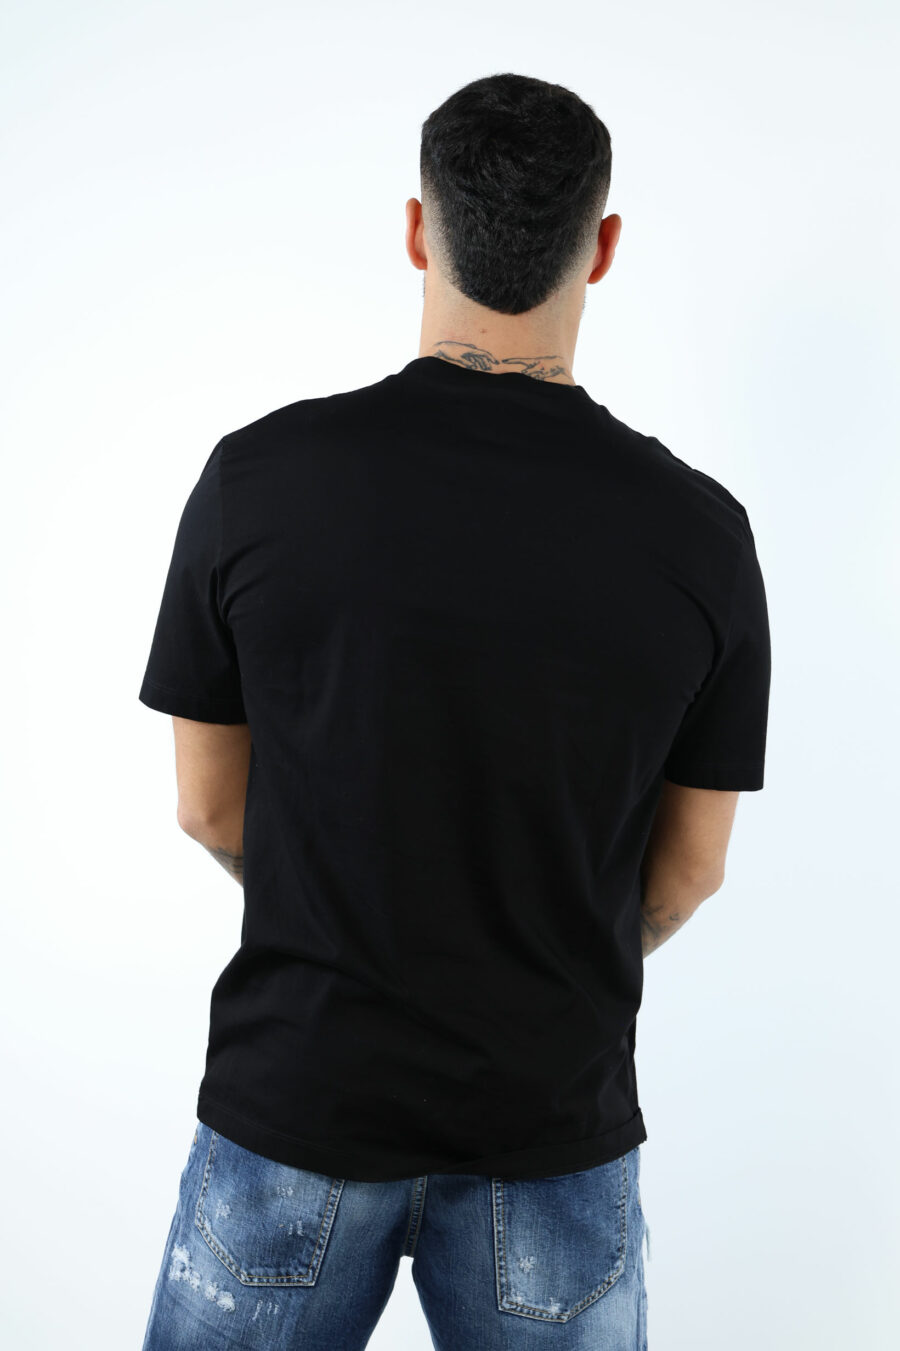 Camiseta negra con maxilogo hoja monocromático en relieve - 106859